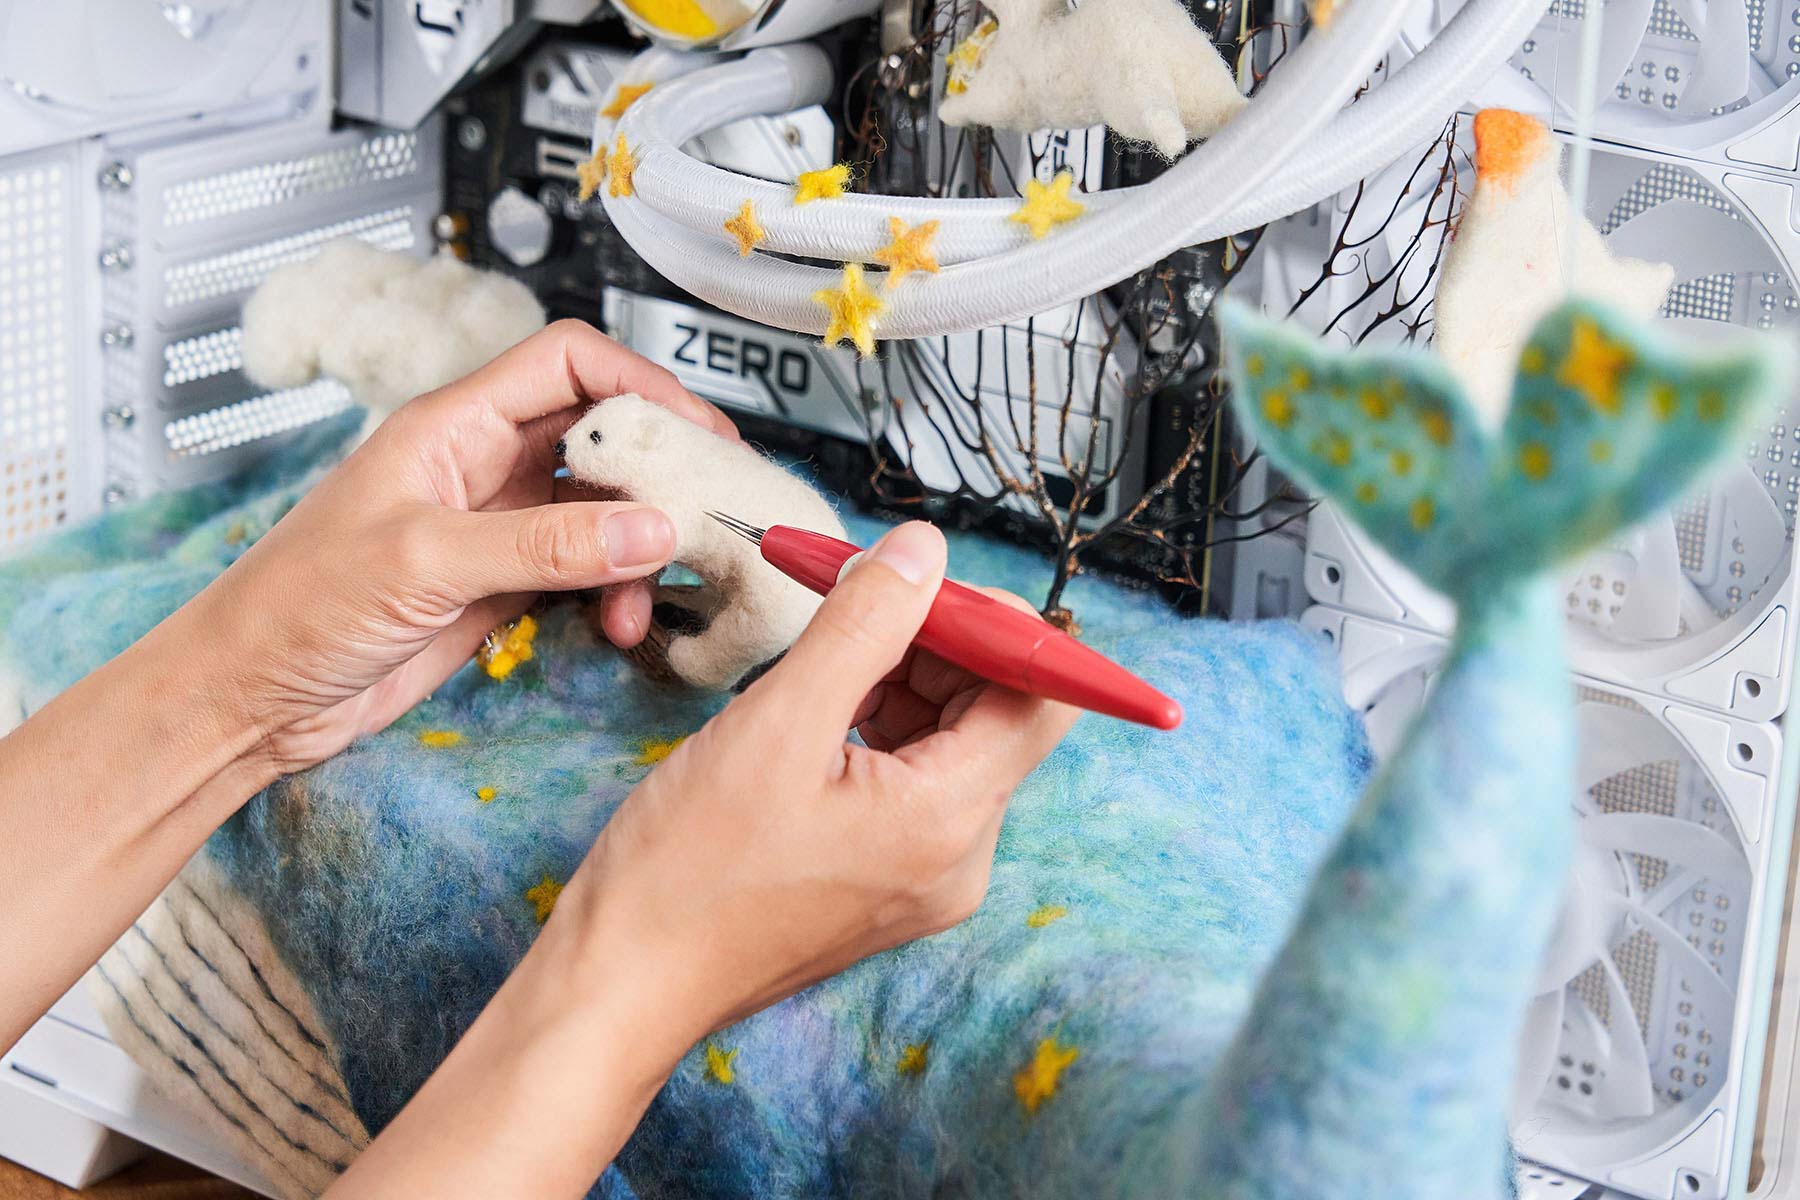 羊毛氈創作需透過專用的多針頭和手指將羊毛纖維分解、塑形，為了「星月童話」這個作品，她花費了 2 個禮拜的時間逐步完成各項組件的製作與裝配。